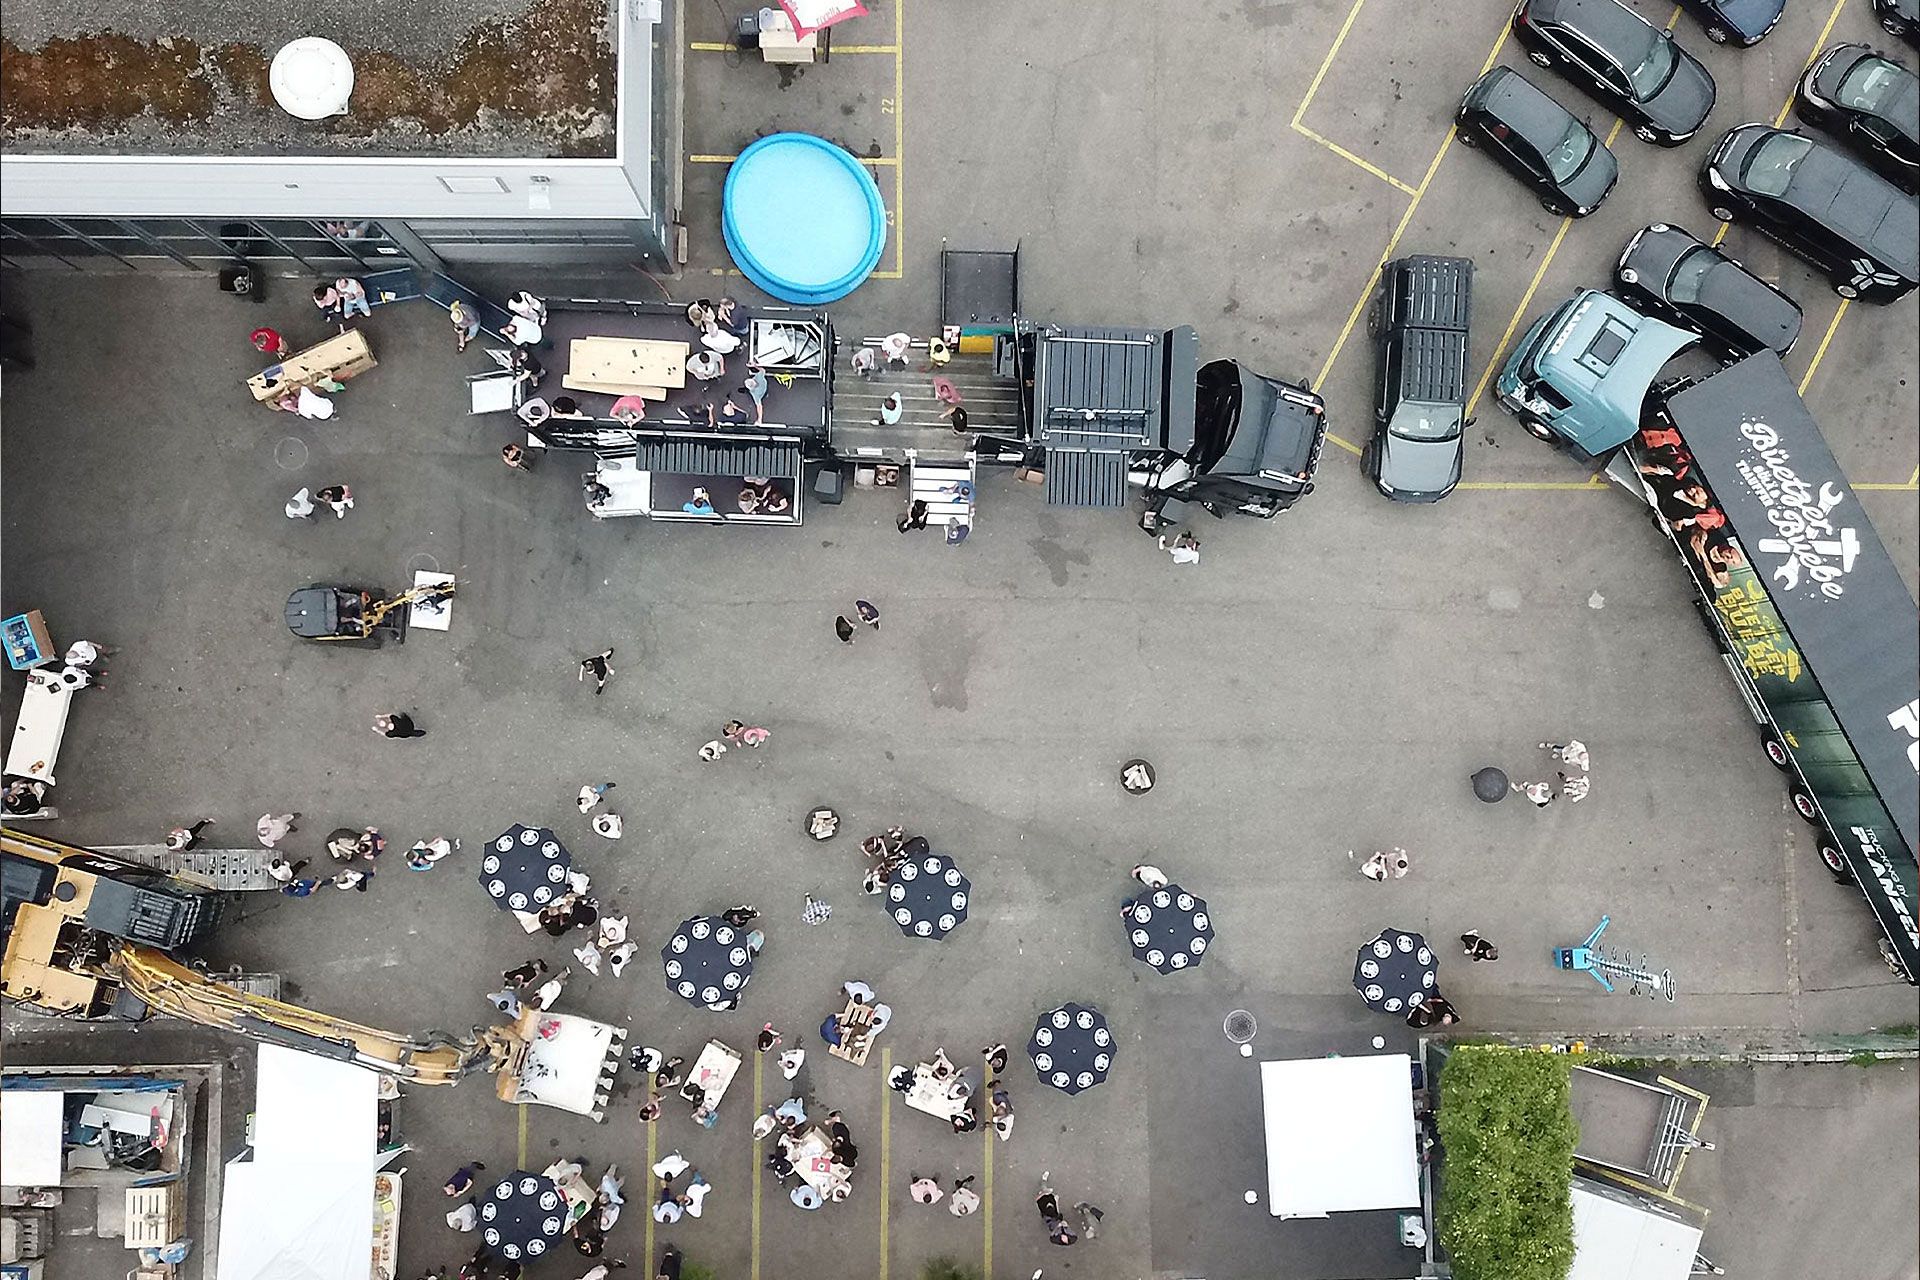 Luftaufnahme eines Outdoor-Events mit Menschen, die sich um den Event-Truck mit geöffneter Bühne und Dachterrasse versammeln, umgeben von Sonnenschirmen und parkenden Fahrzeugen.